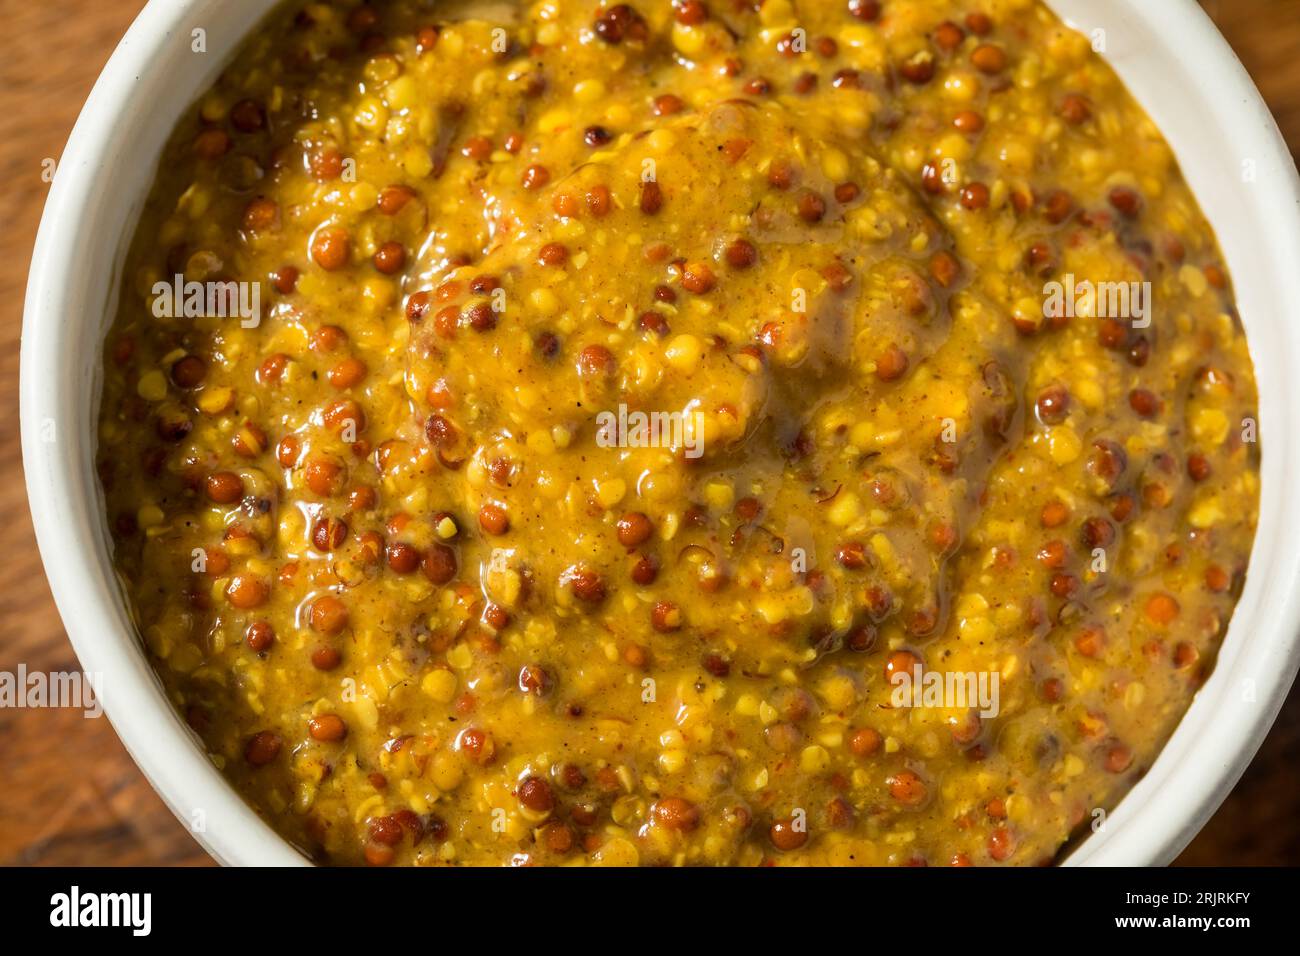 Moutarde grainée épicée bio brune dans un bol Banque D'Images